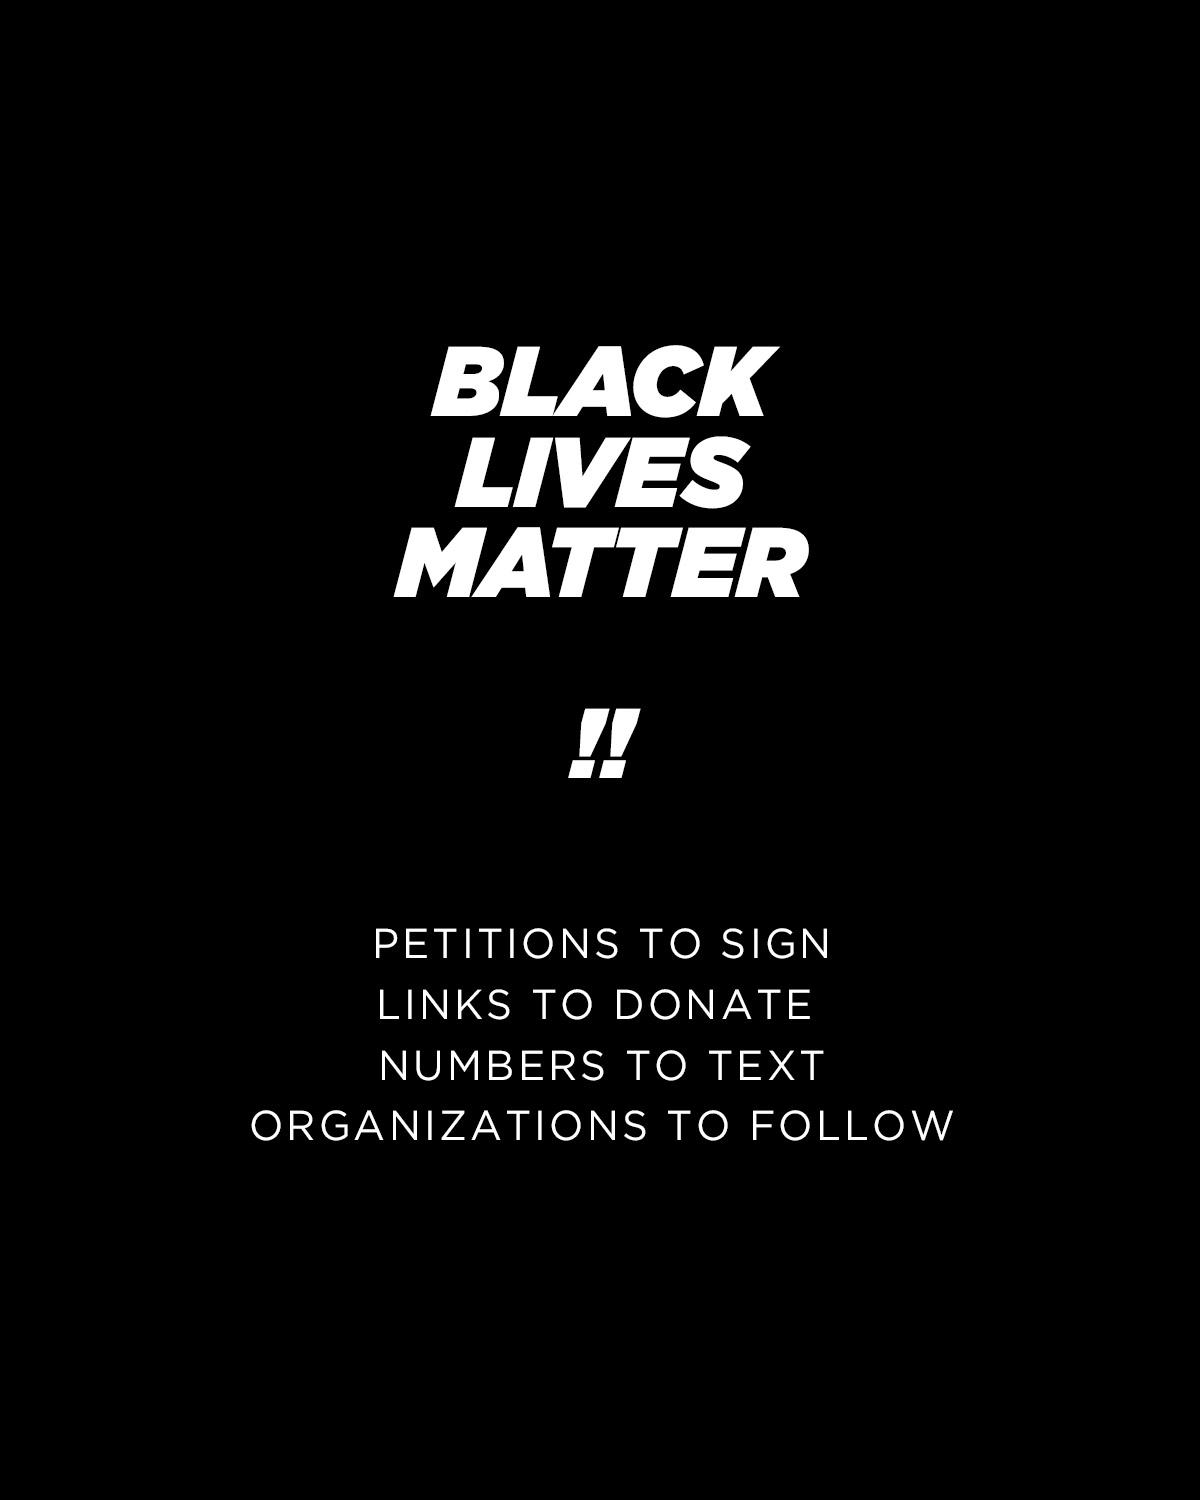 Black Lives Matter - Resources